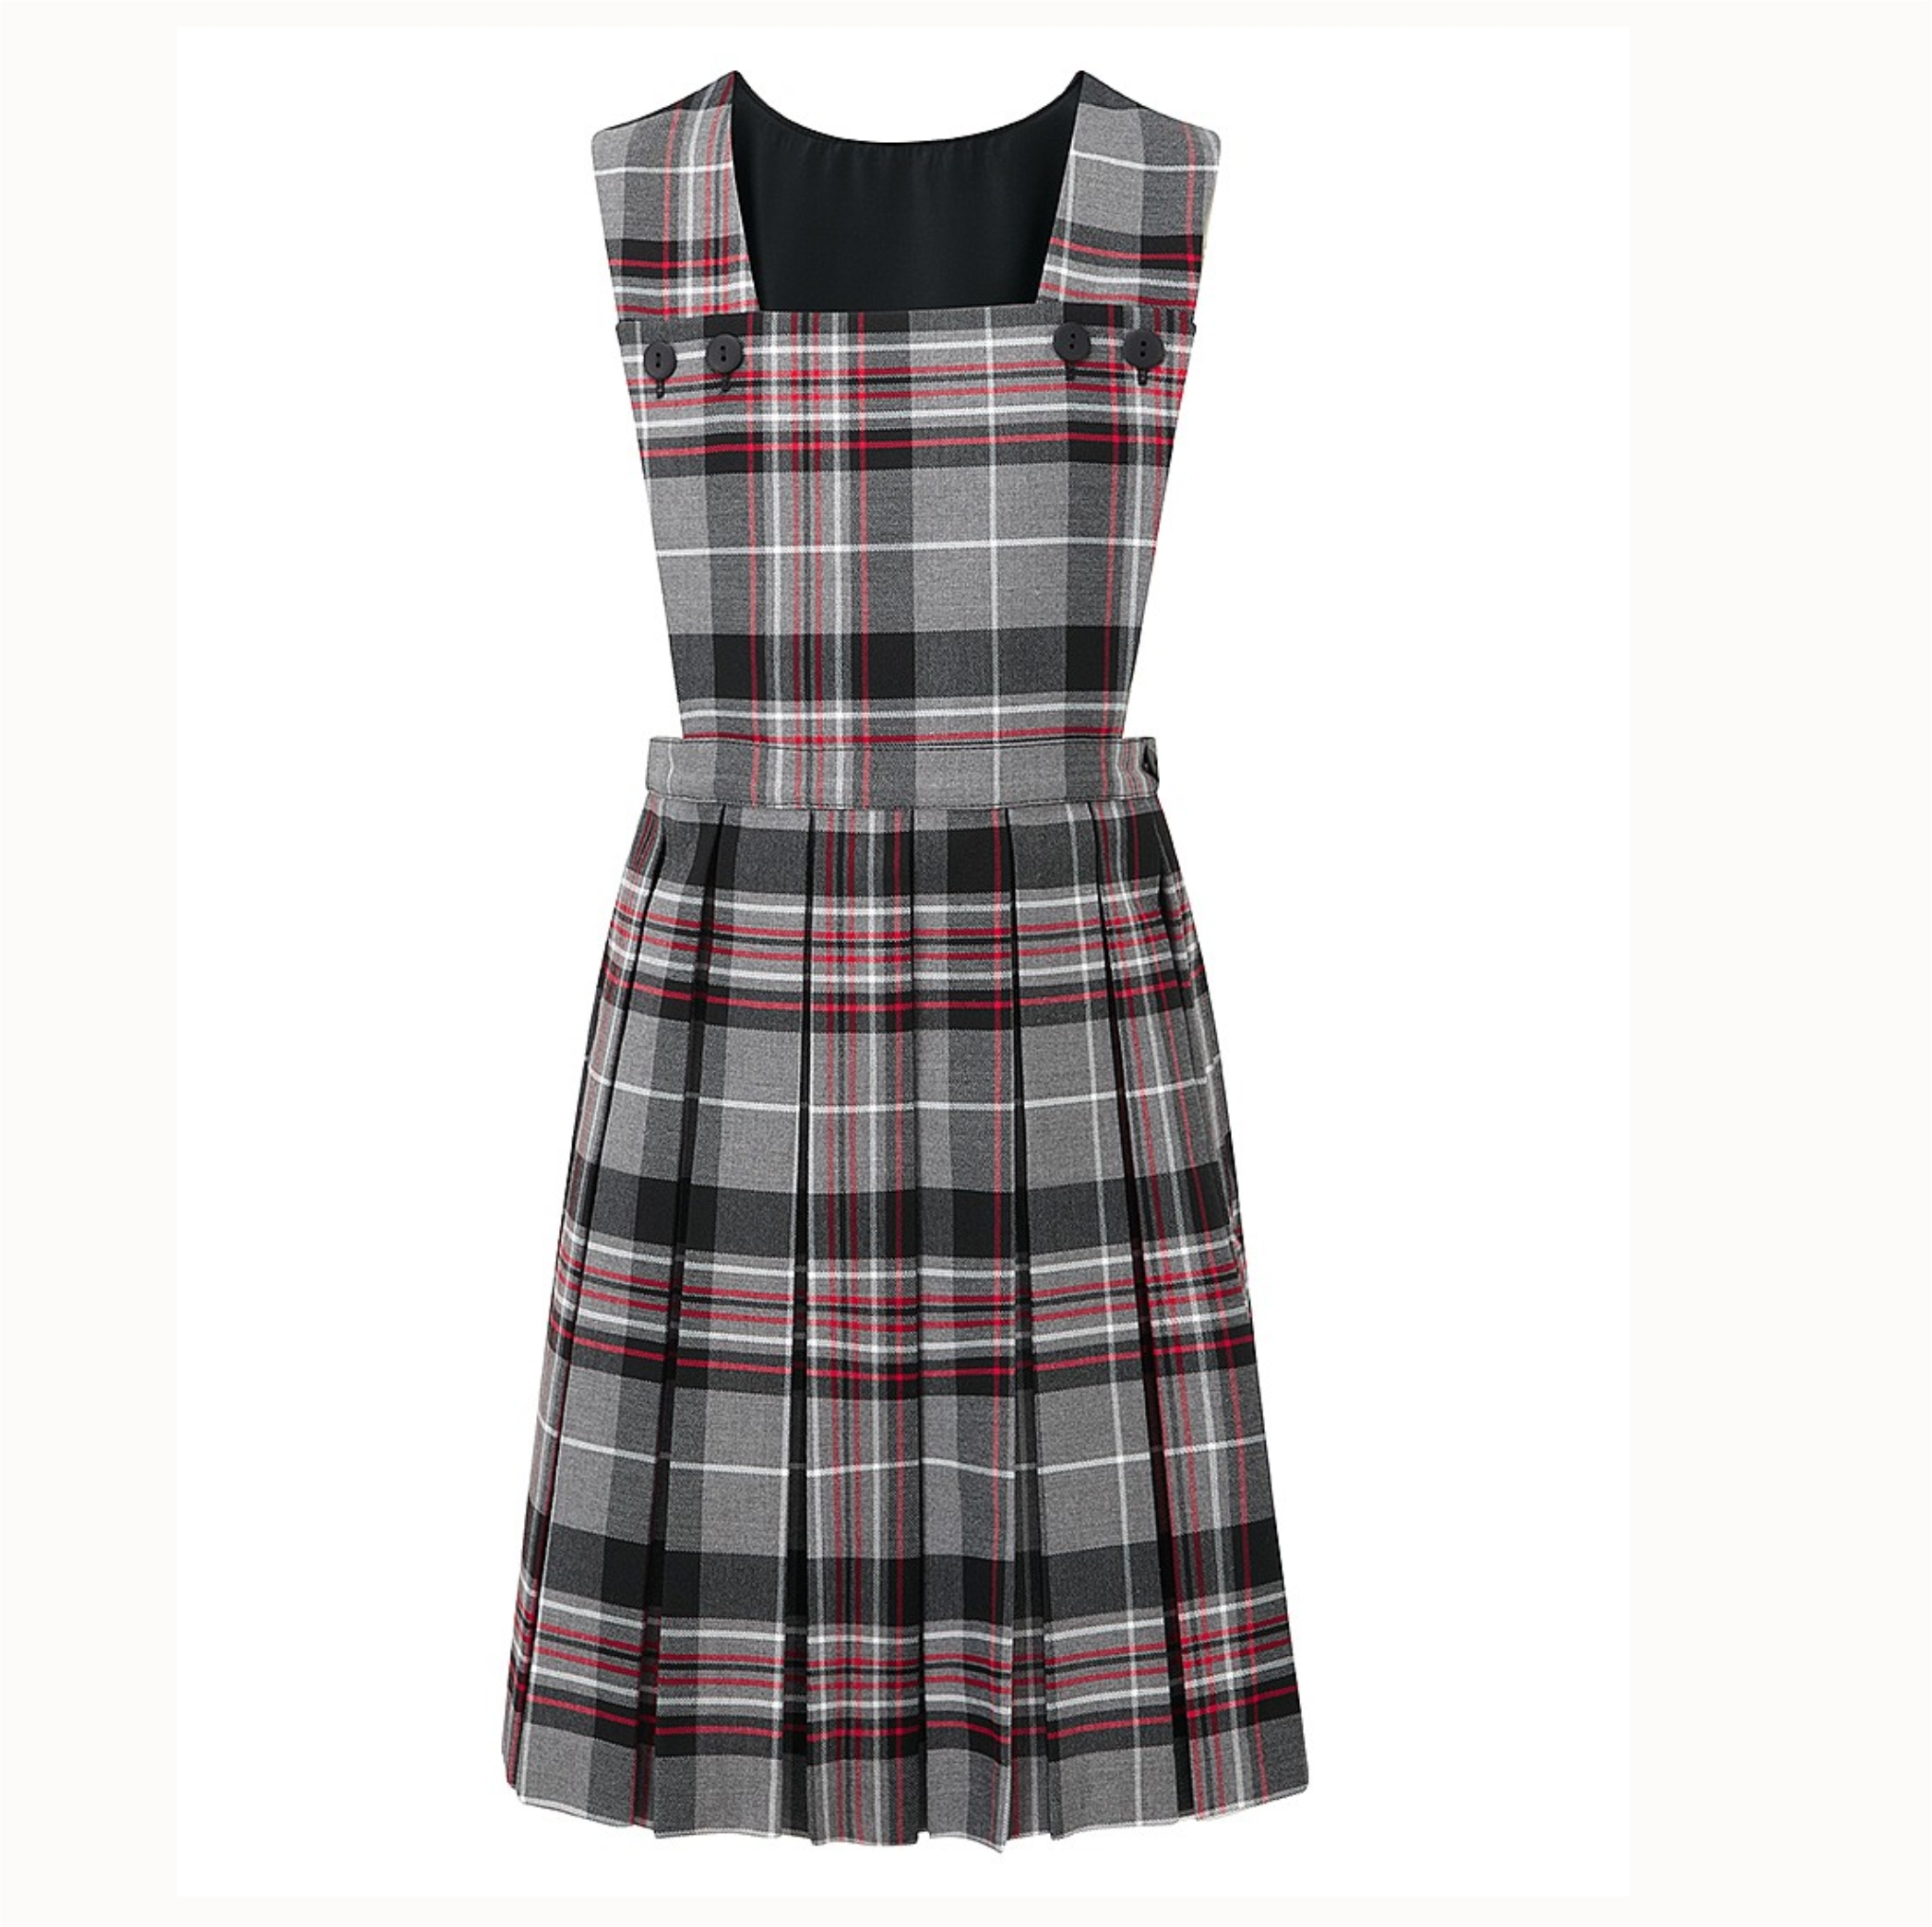 Buy > pinafore dress school grey > in stock